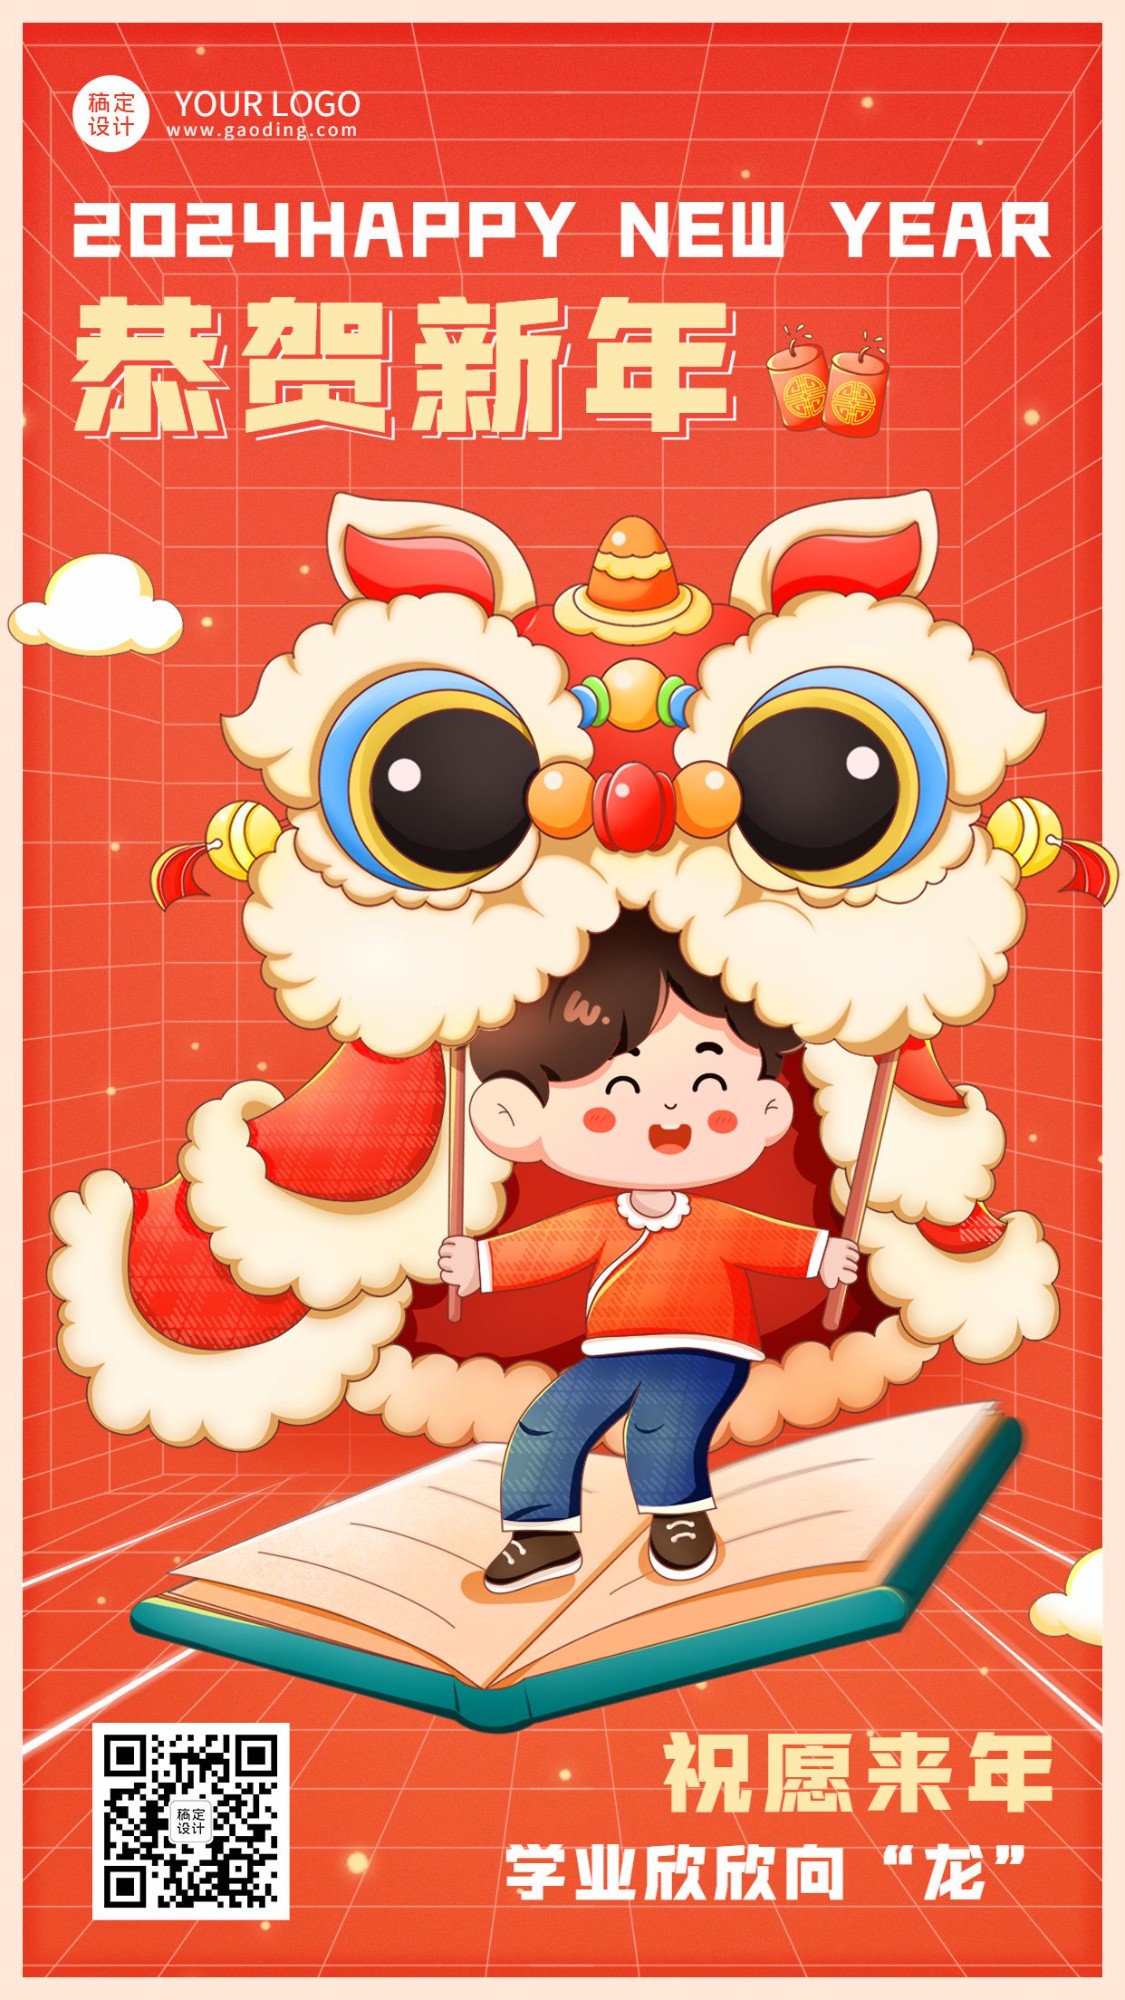 春节祝福教育培训新年祝福拜年插画风格手机海报